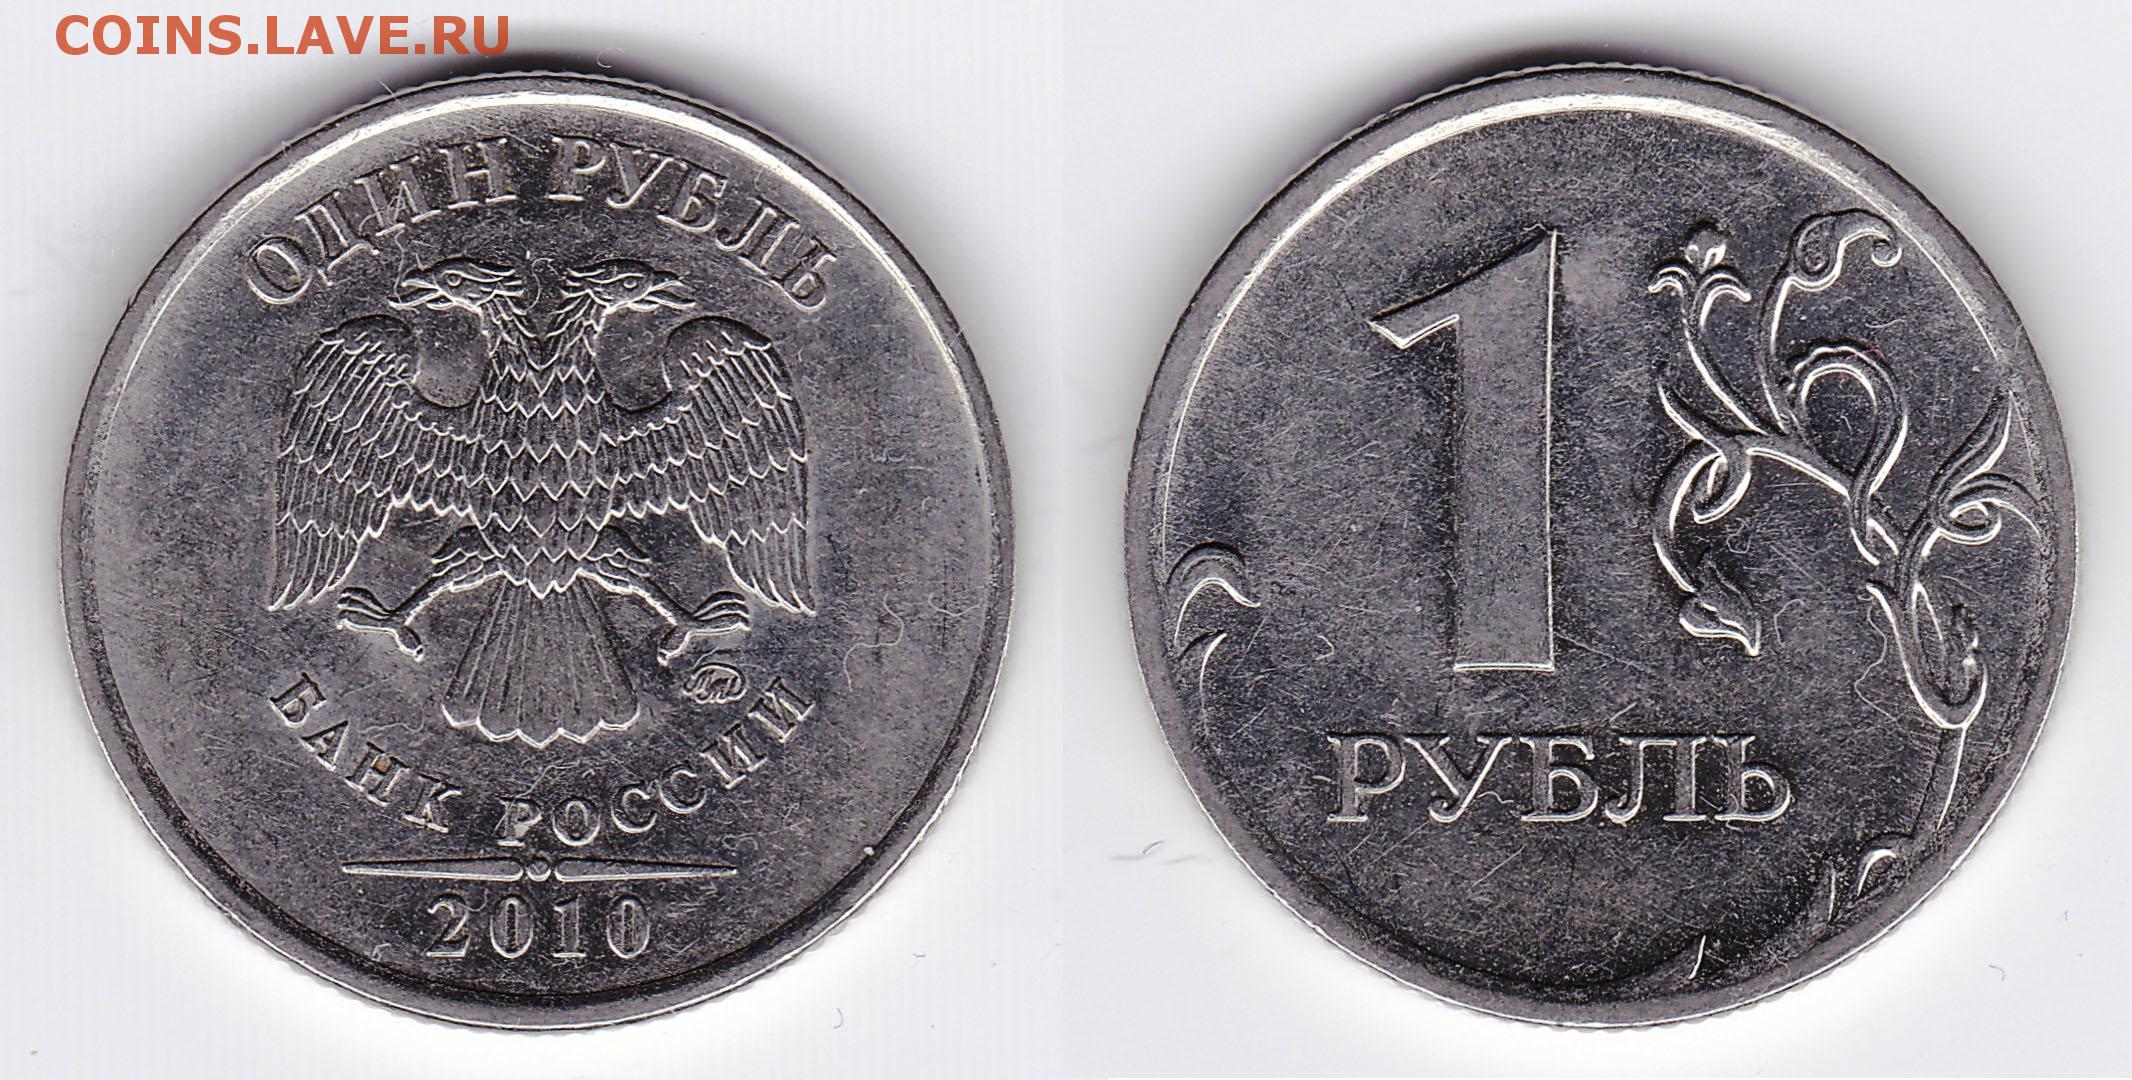 80 рублей россии. Монета 1 рубль 2014. Монета 1 рубль 2010 СПМД. Монета 1 рубль с буквой р. Вес рубля 2014 года.